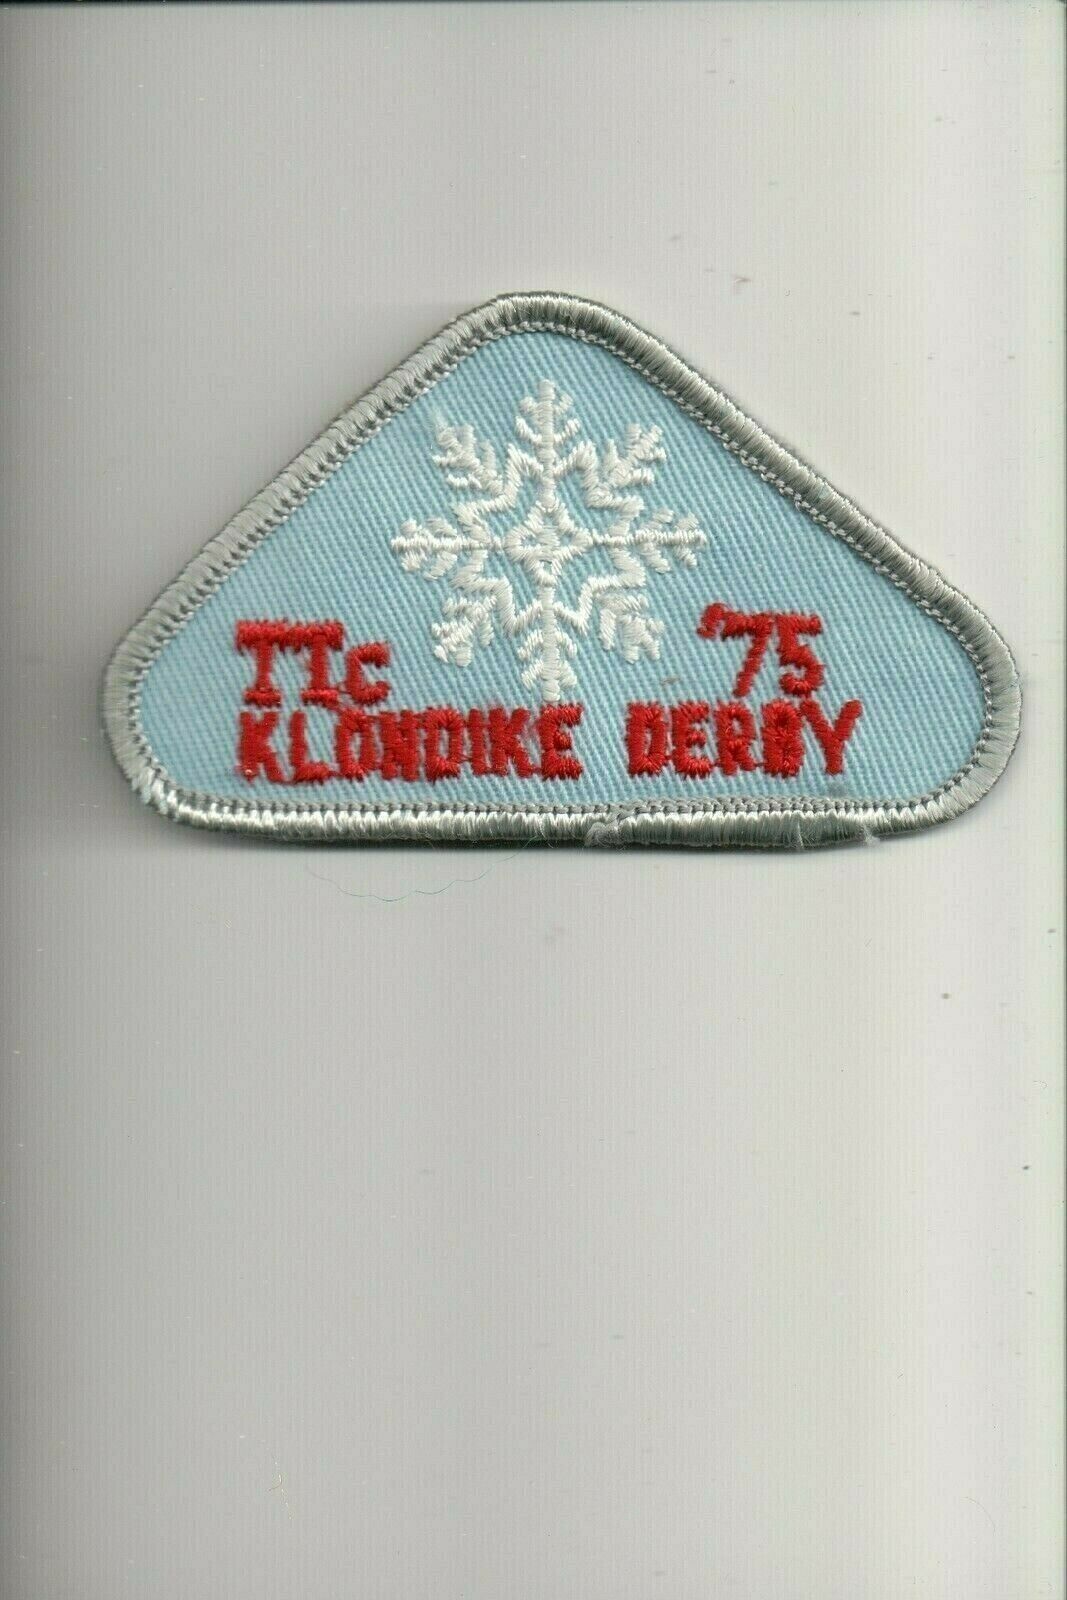 1975 Klondike Derby patch